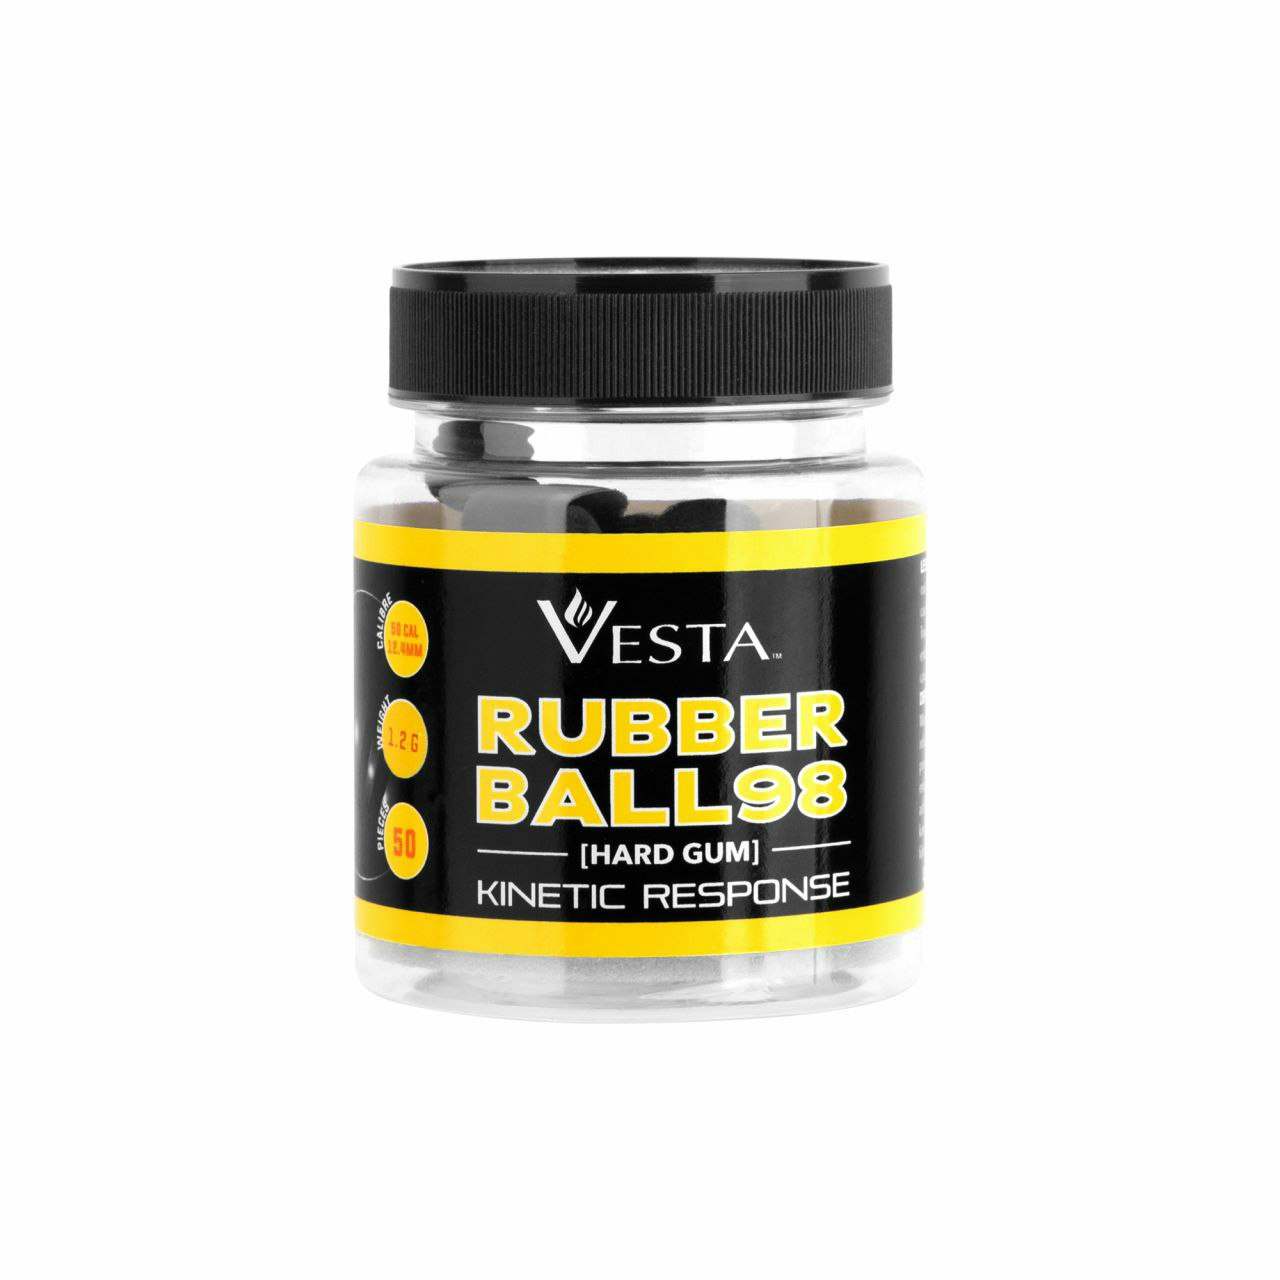 Vesta Rubber Ball 98 .50 Kaliber 50 st